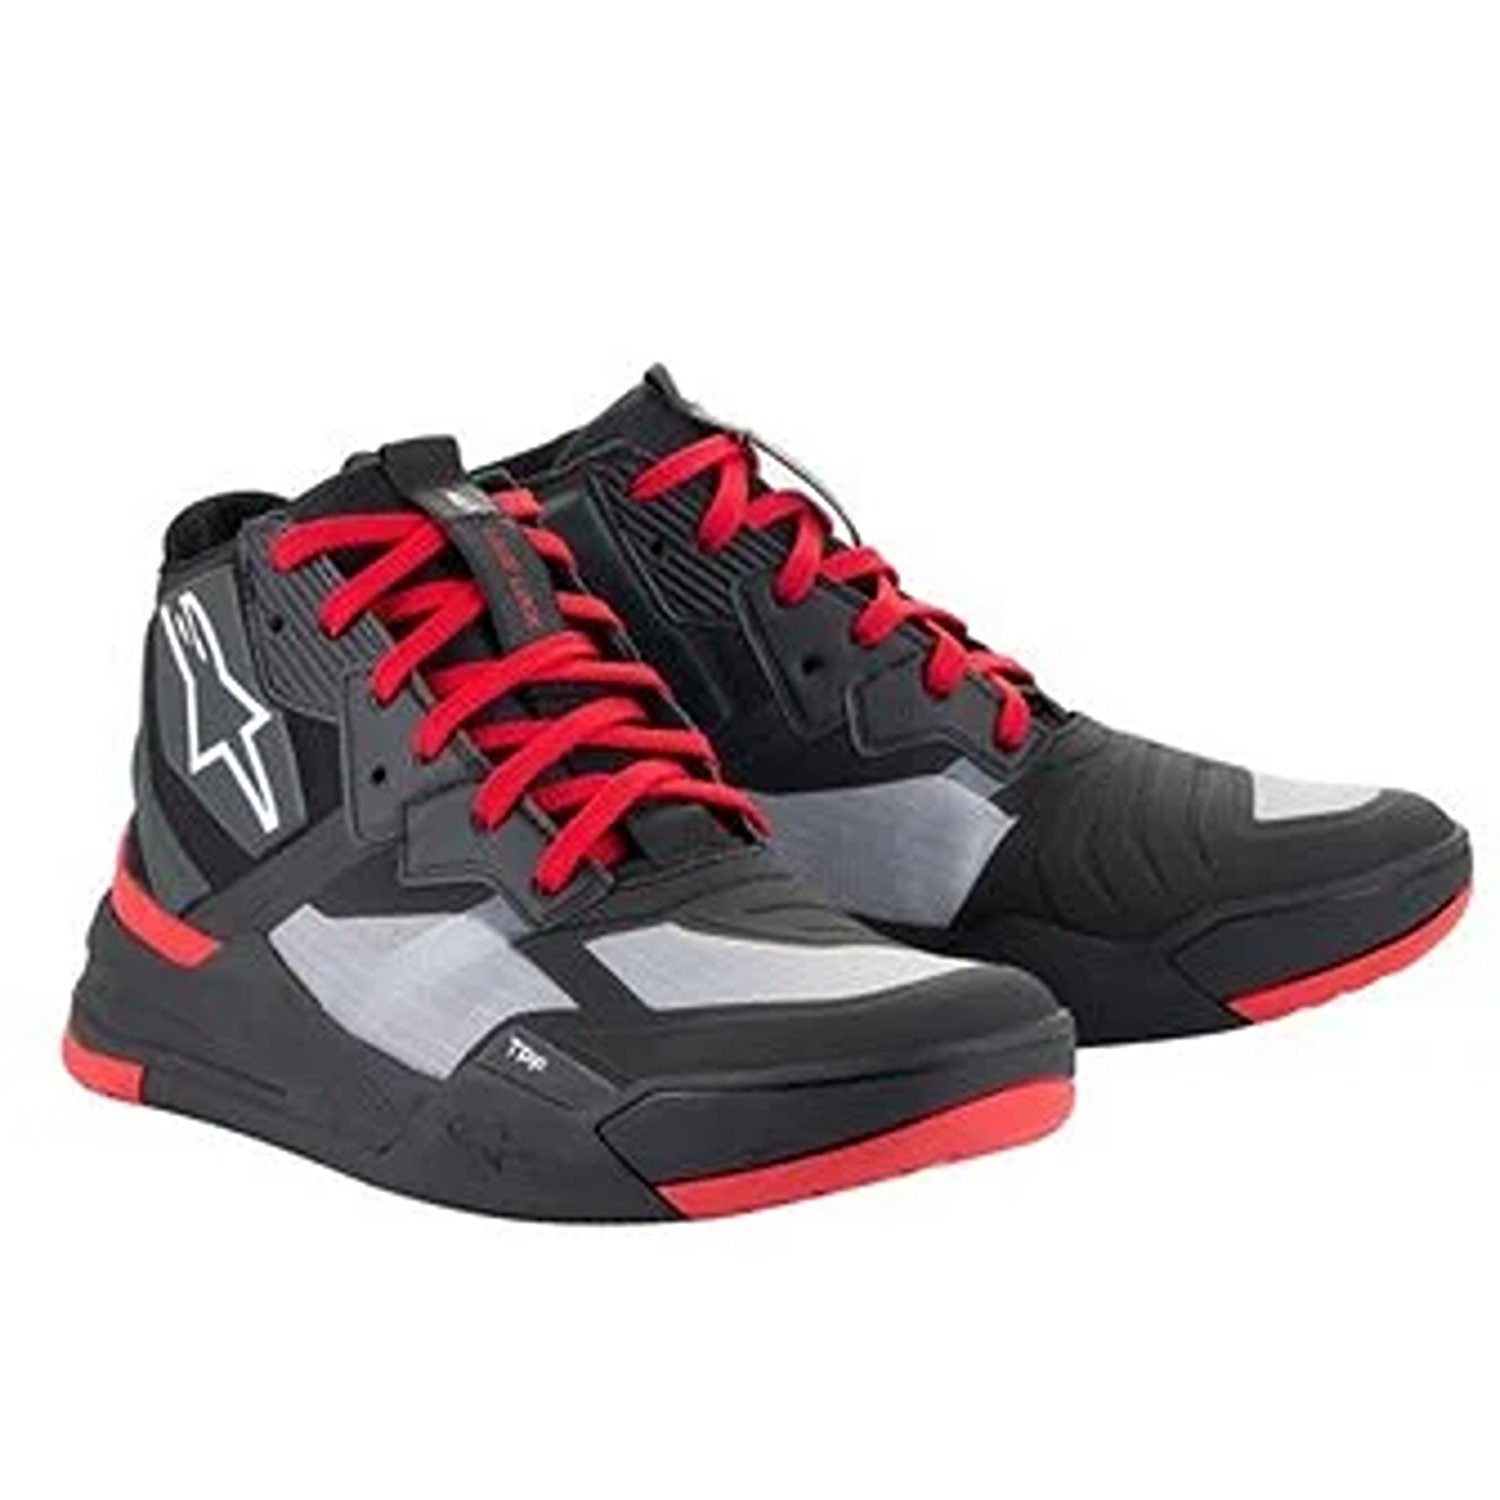 Image of Alpinestars Speedflight Shoes Black Bright Red White Größe US 6